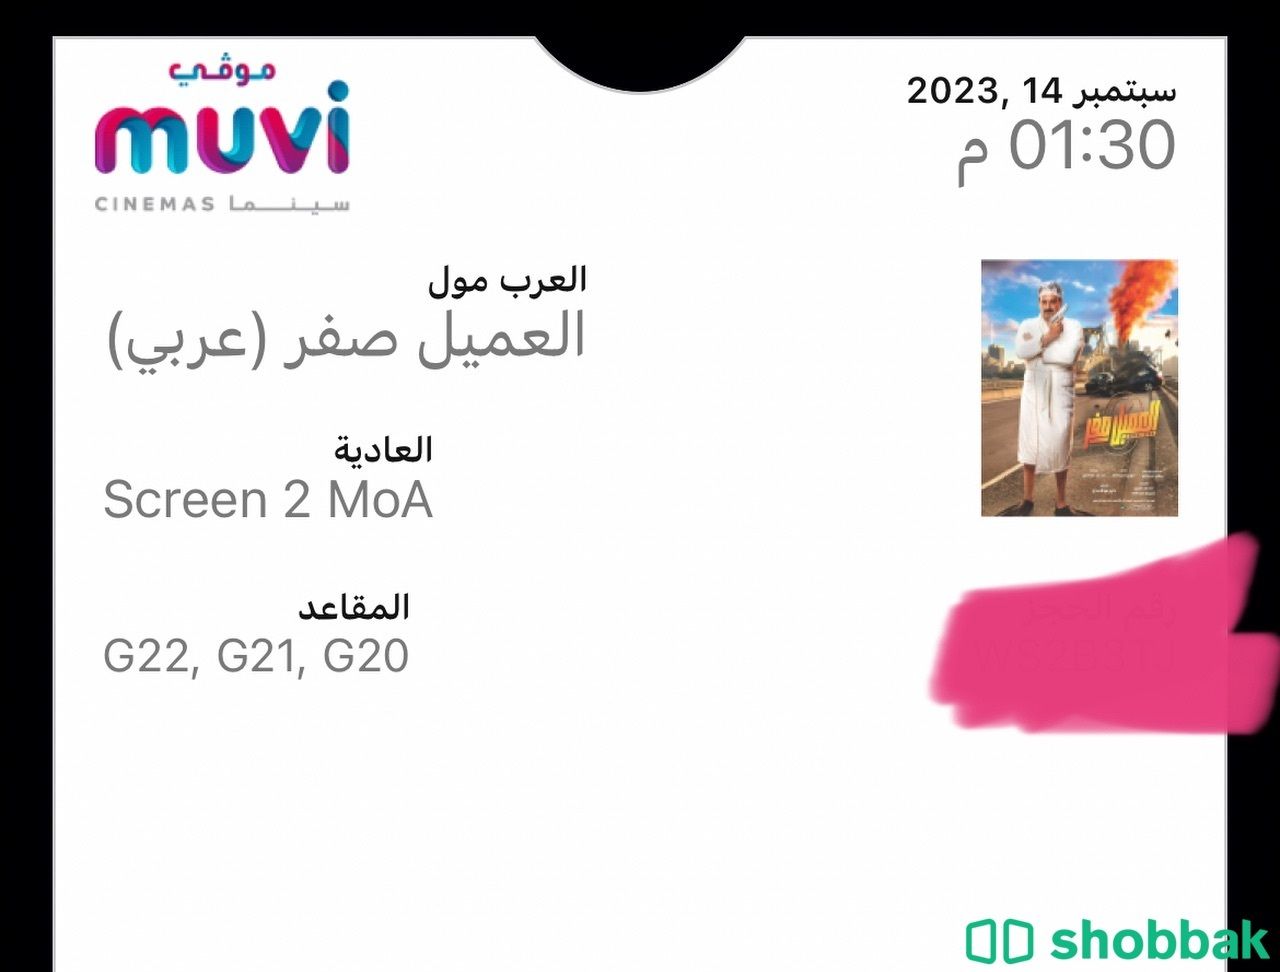 ٣ تذاكر  لفلم  العميل صفر فئة ستنادر ليوم١٤ سبتمبر Shobbak Saudi Arabia